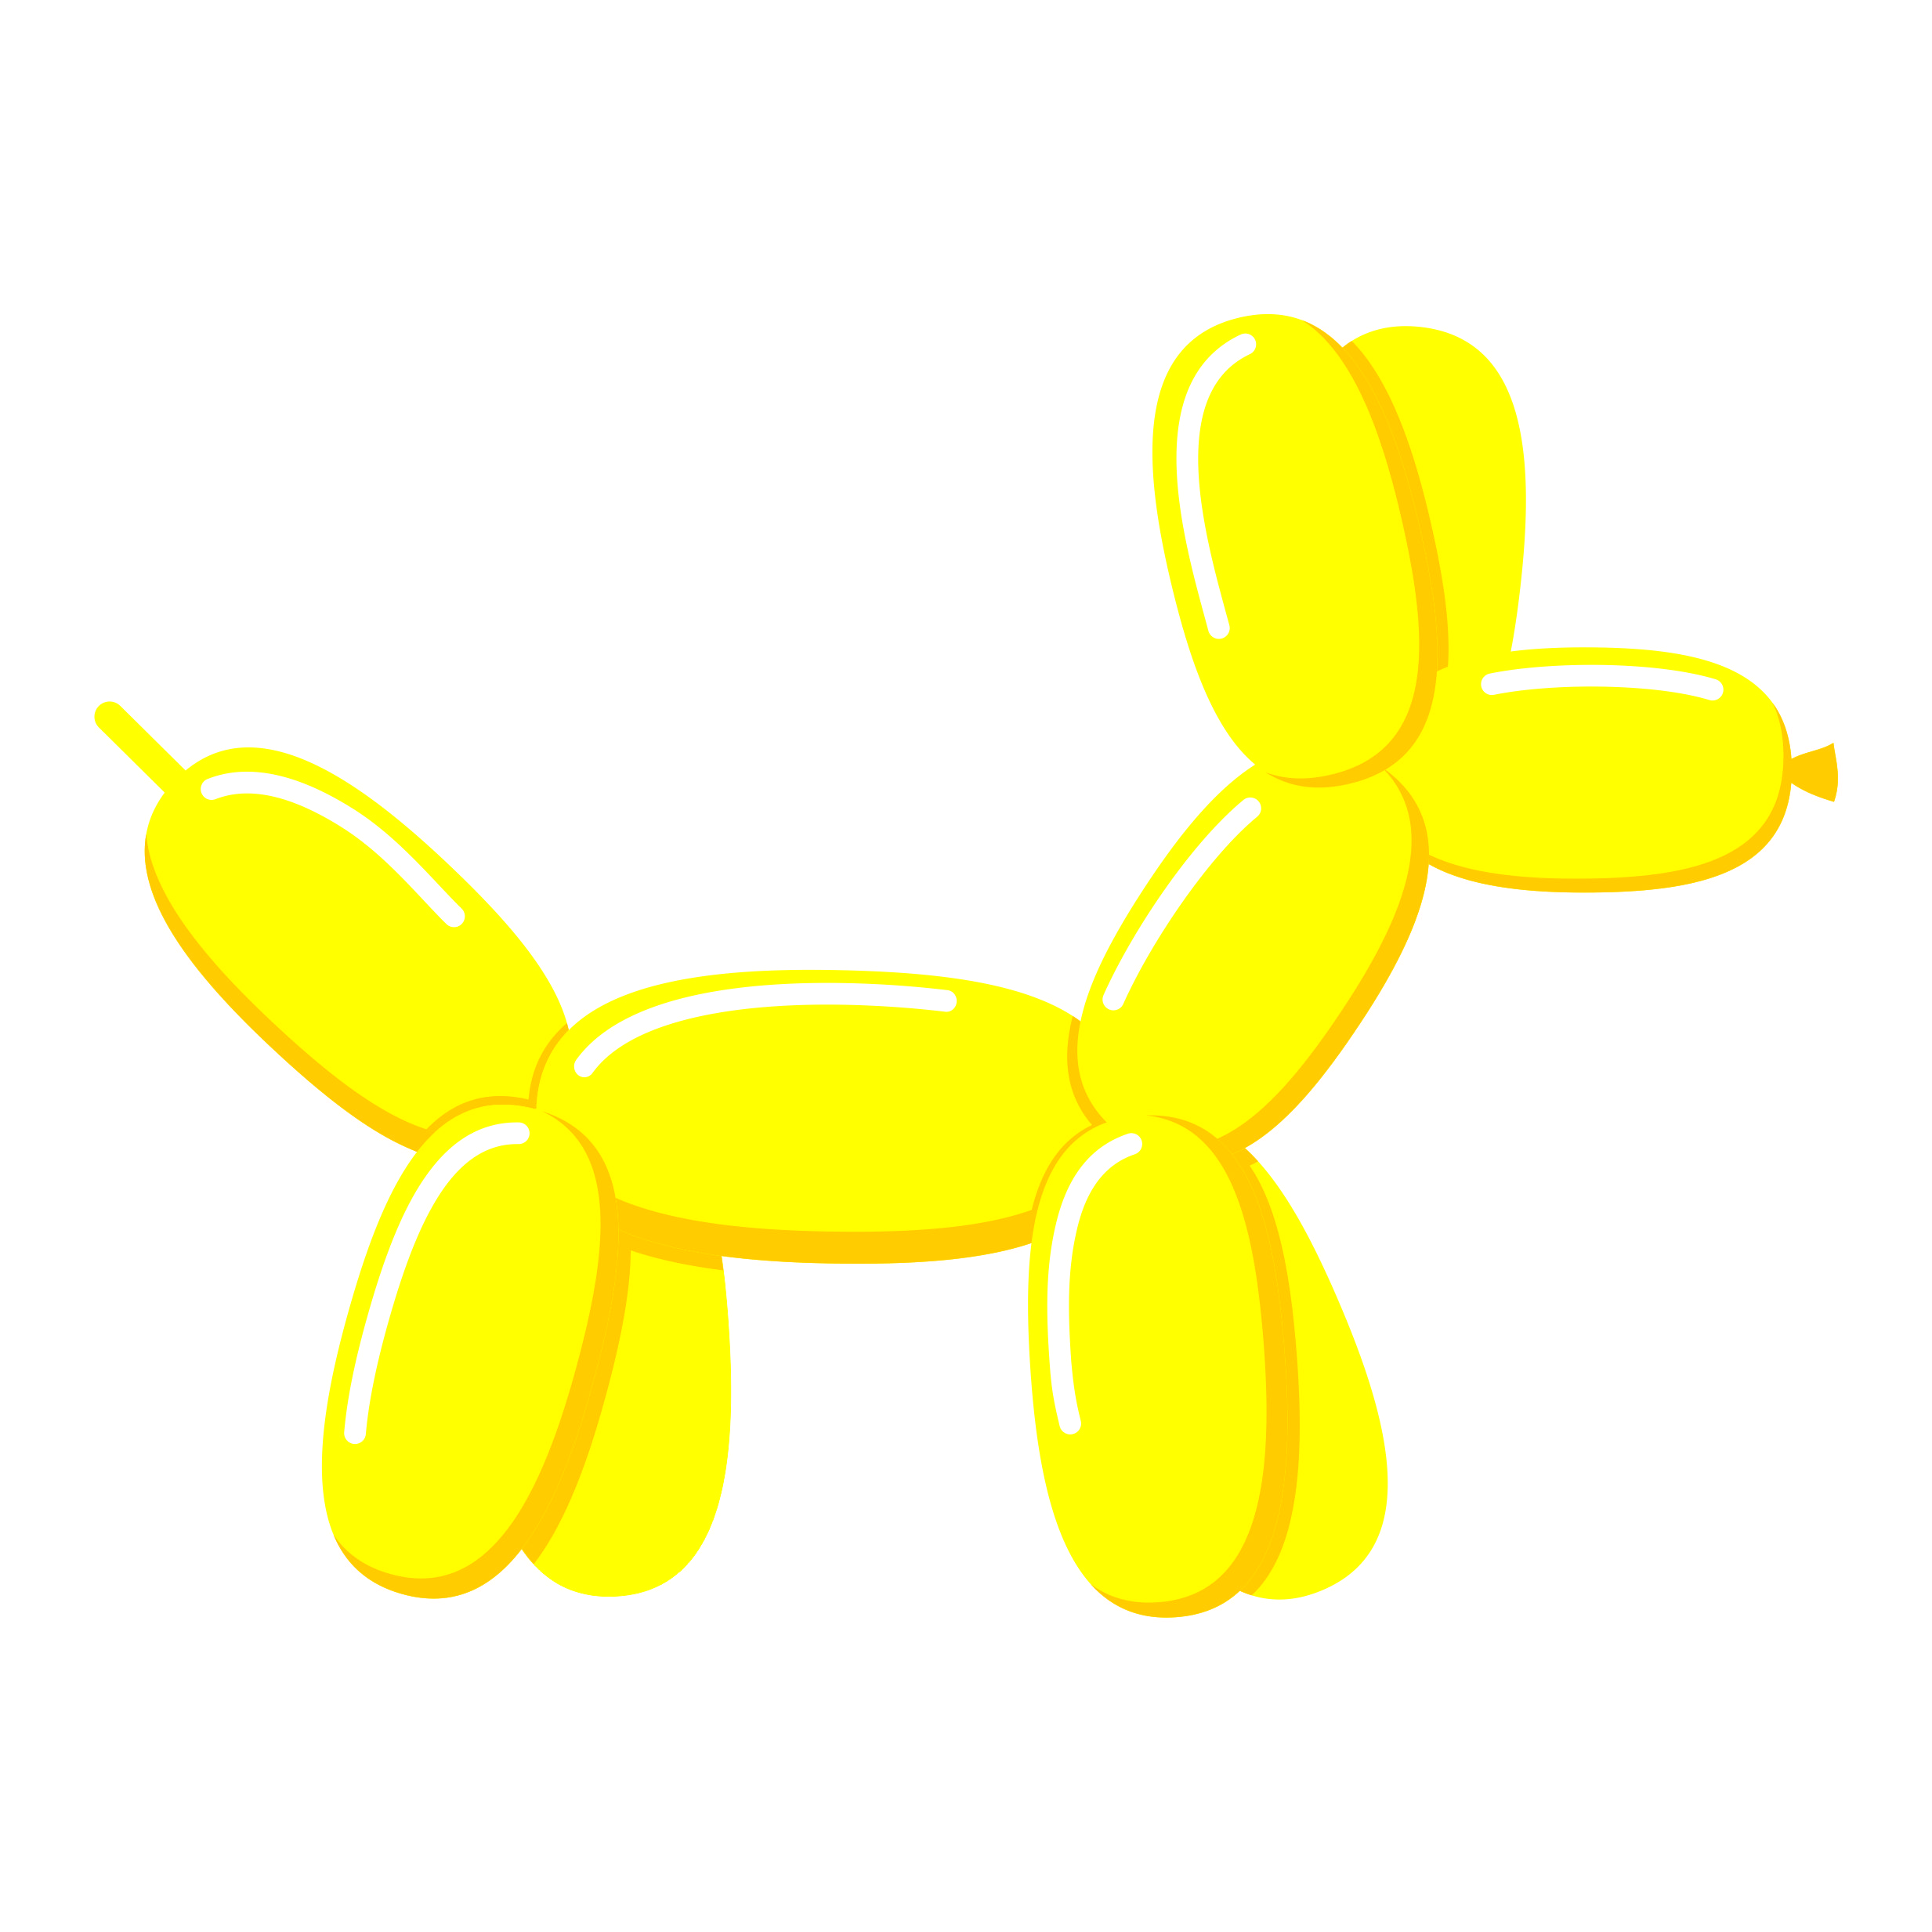 Tvarovací balónek žlutý Belbal Tvarovací balónek žlutý Belbal